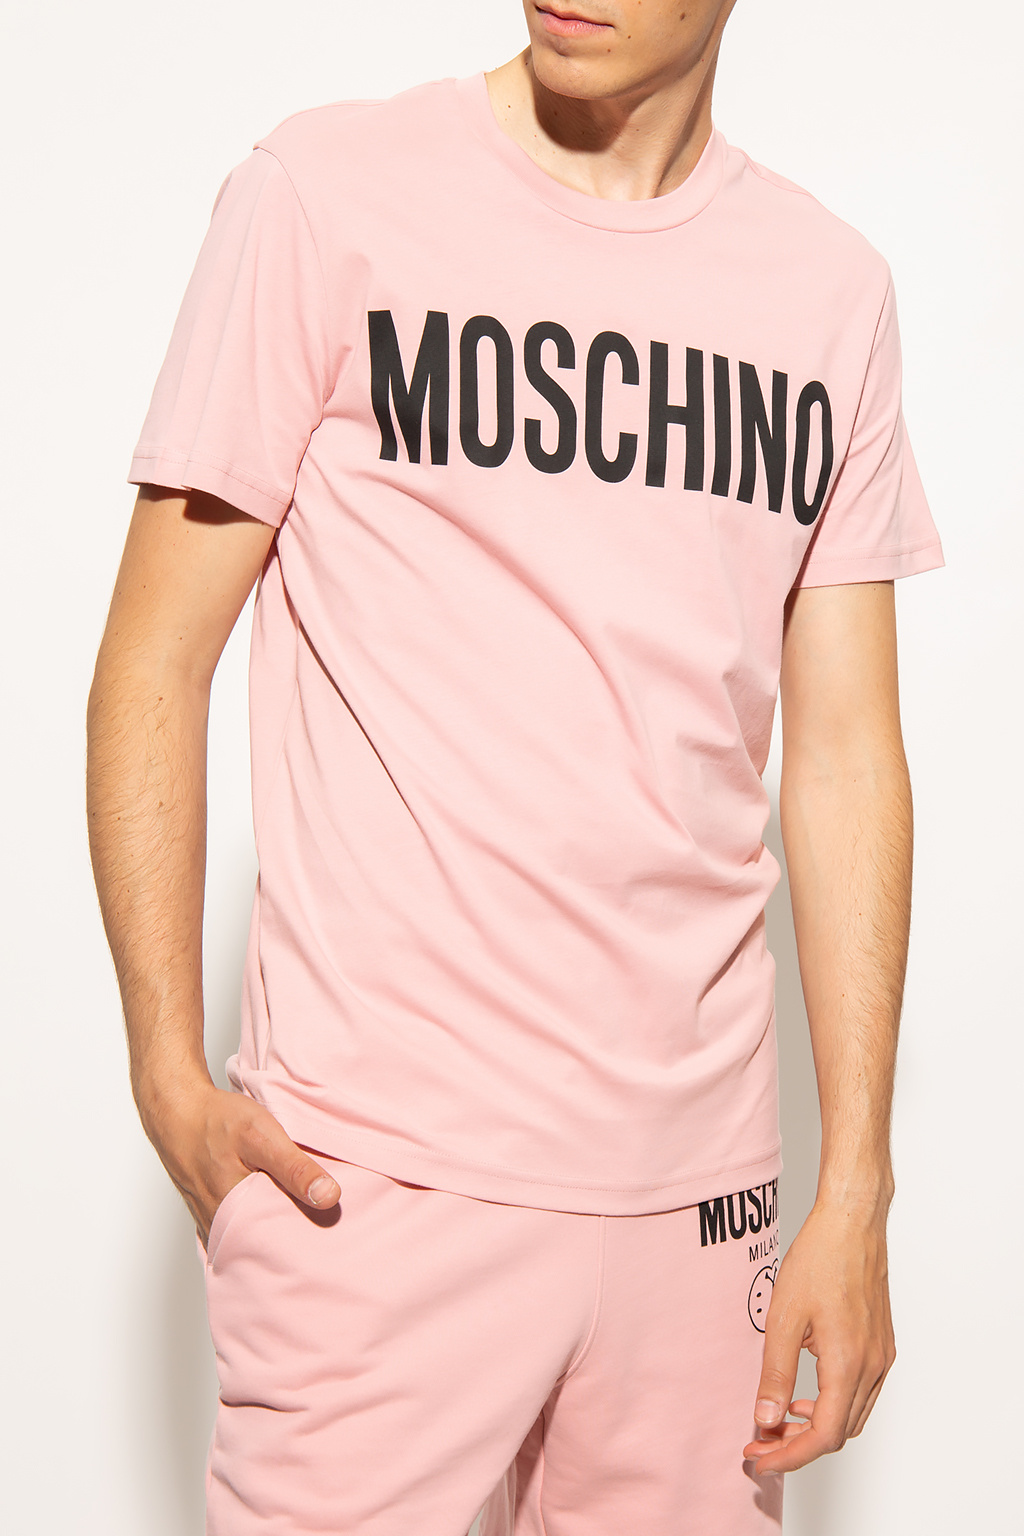 Moschino men polo-shirts shoe-care women robes